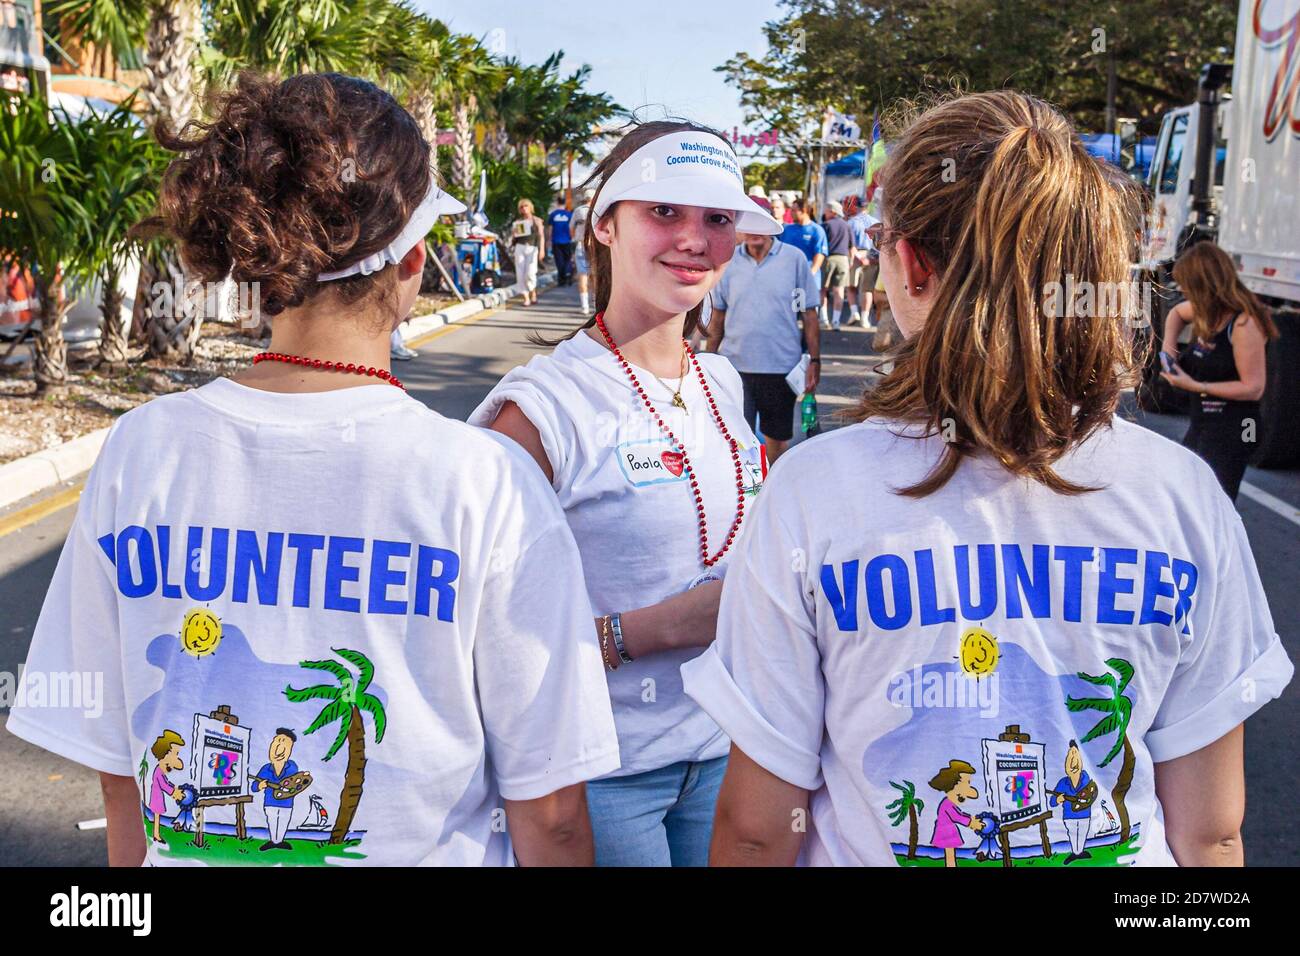 Miami Florida,Coconut Grove Arts Festival,studenti volontari volontari volontari volontari volontari lavoratori del lavoro,adolescenti adolescenti ragazze ragazza, Foto Stock